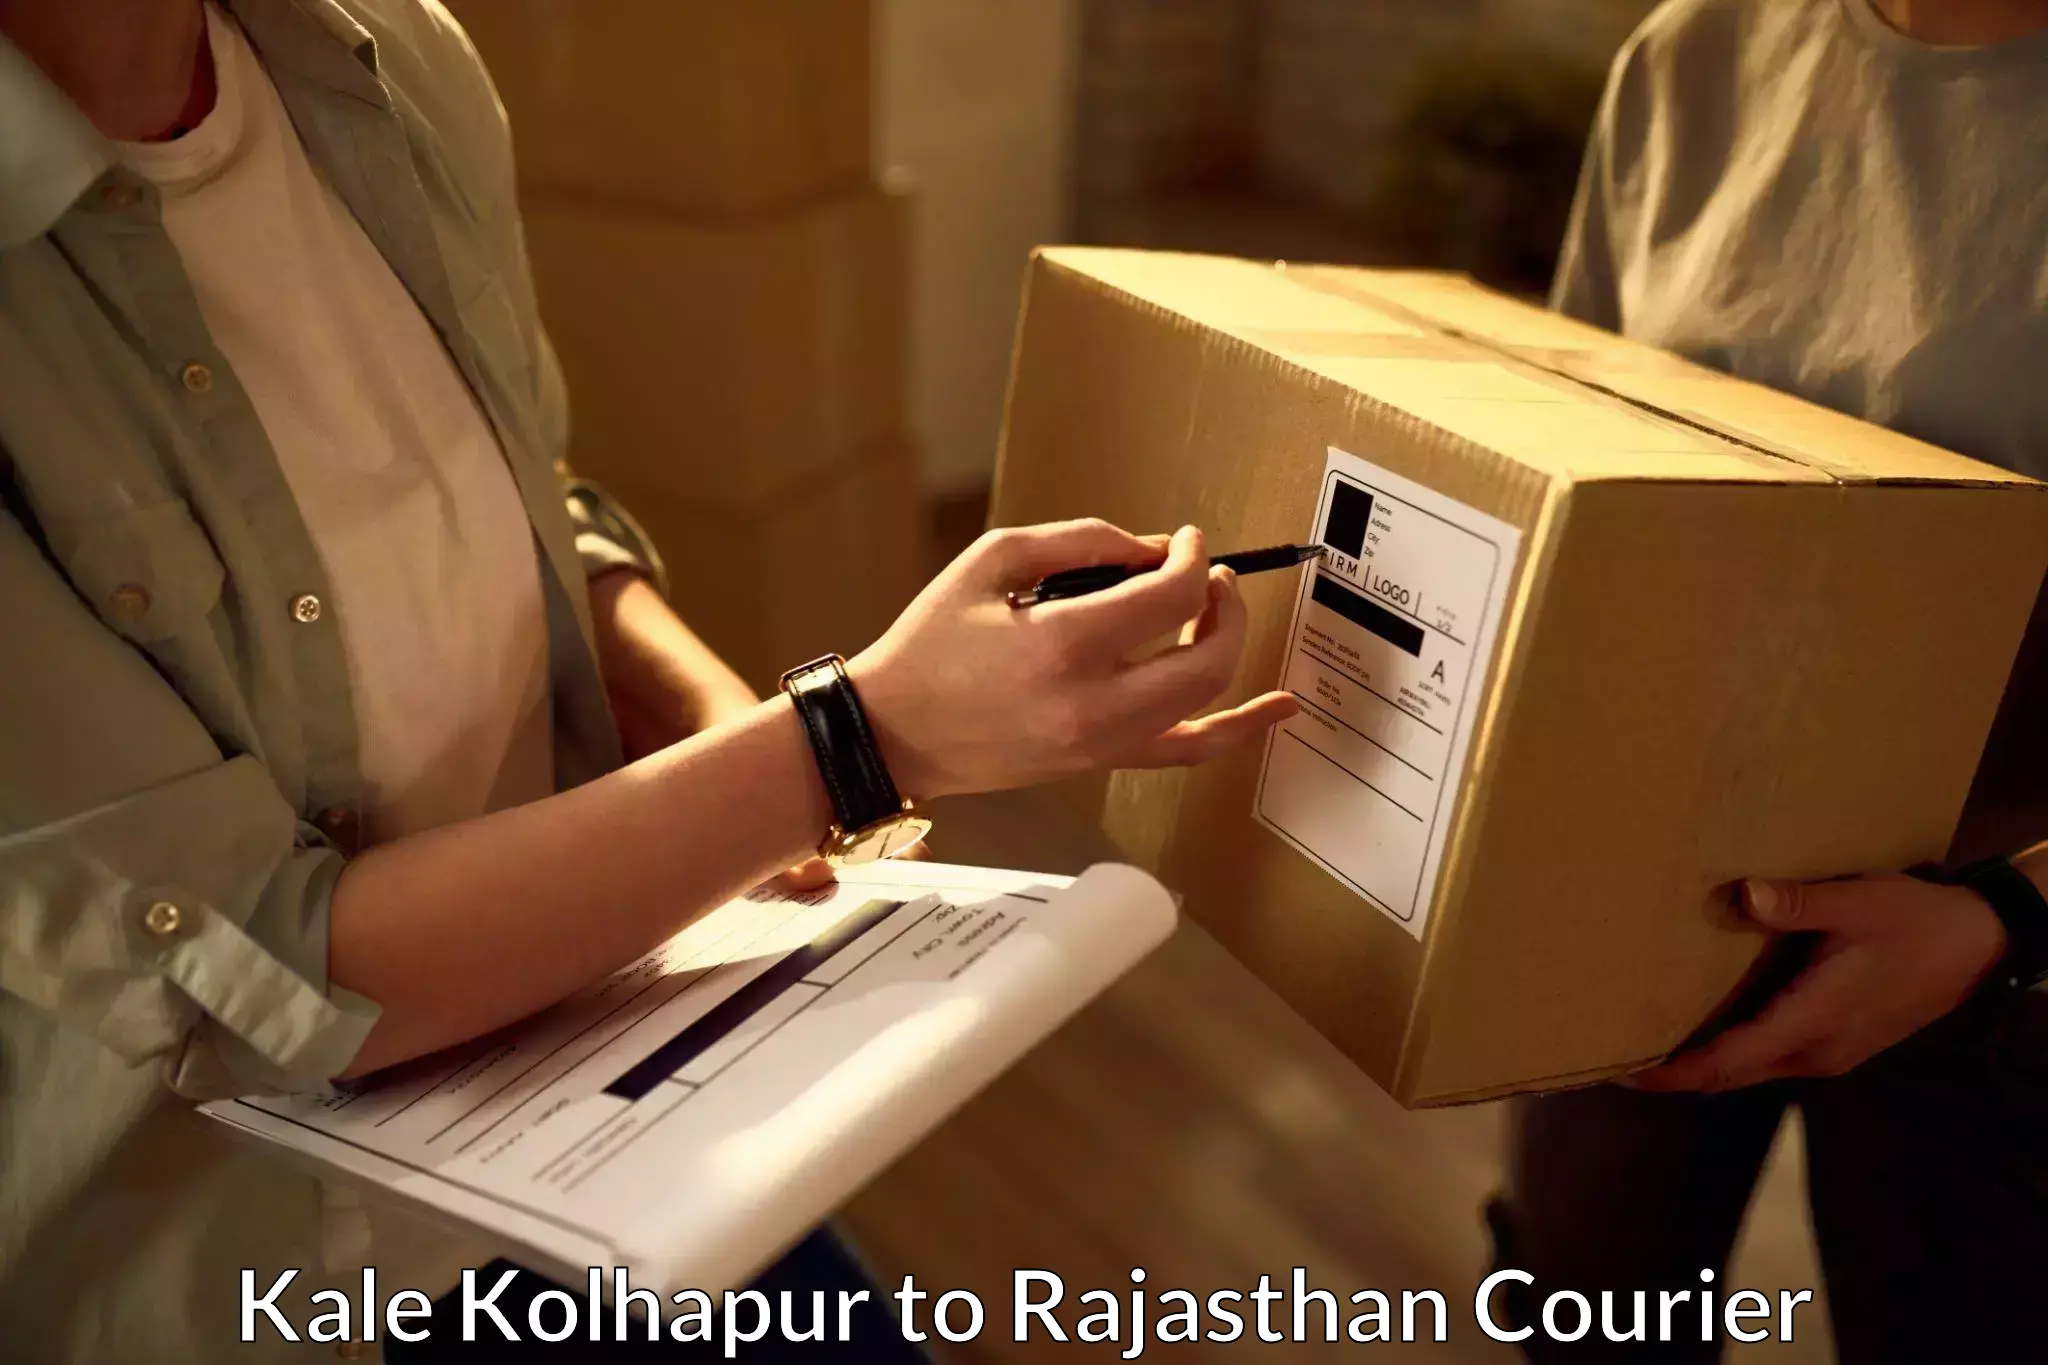 High-efficiency logistics Kale Kolhapur to Bandikui